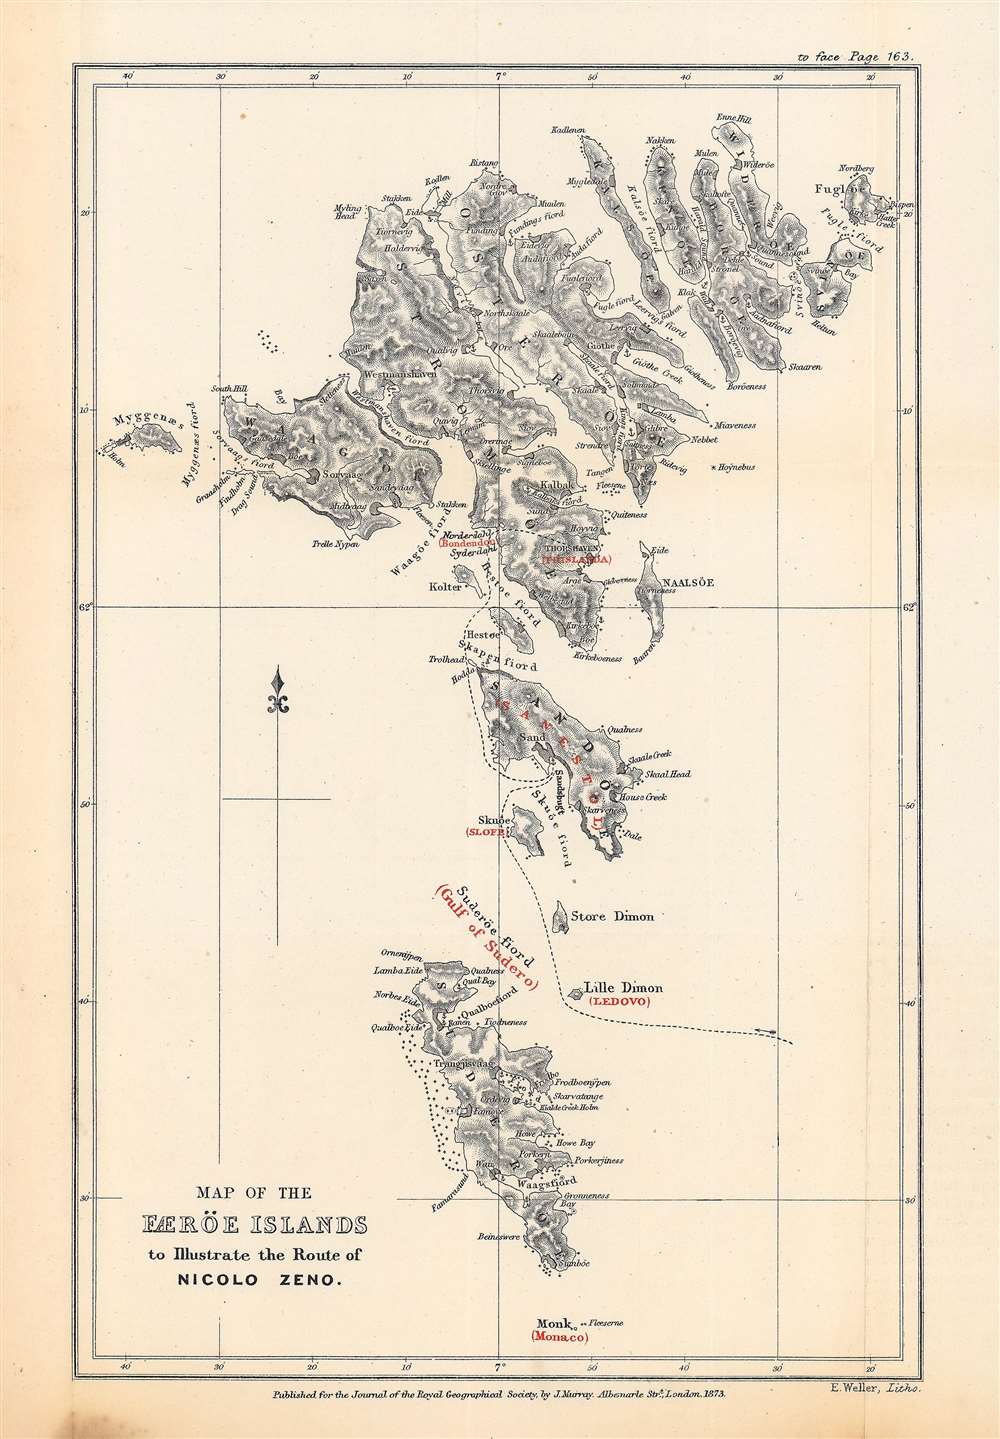 1873 Weller Map of the Faroe Islands